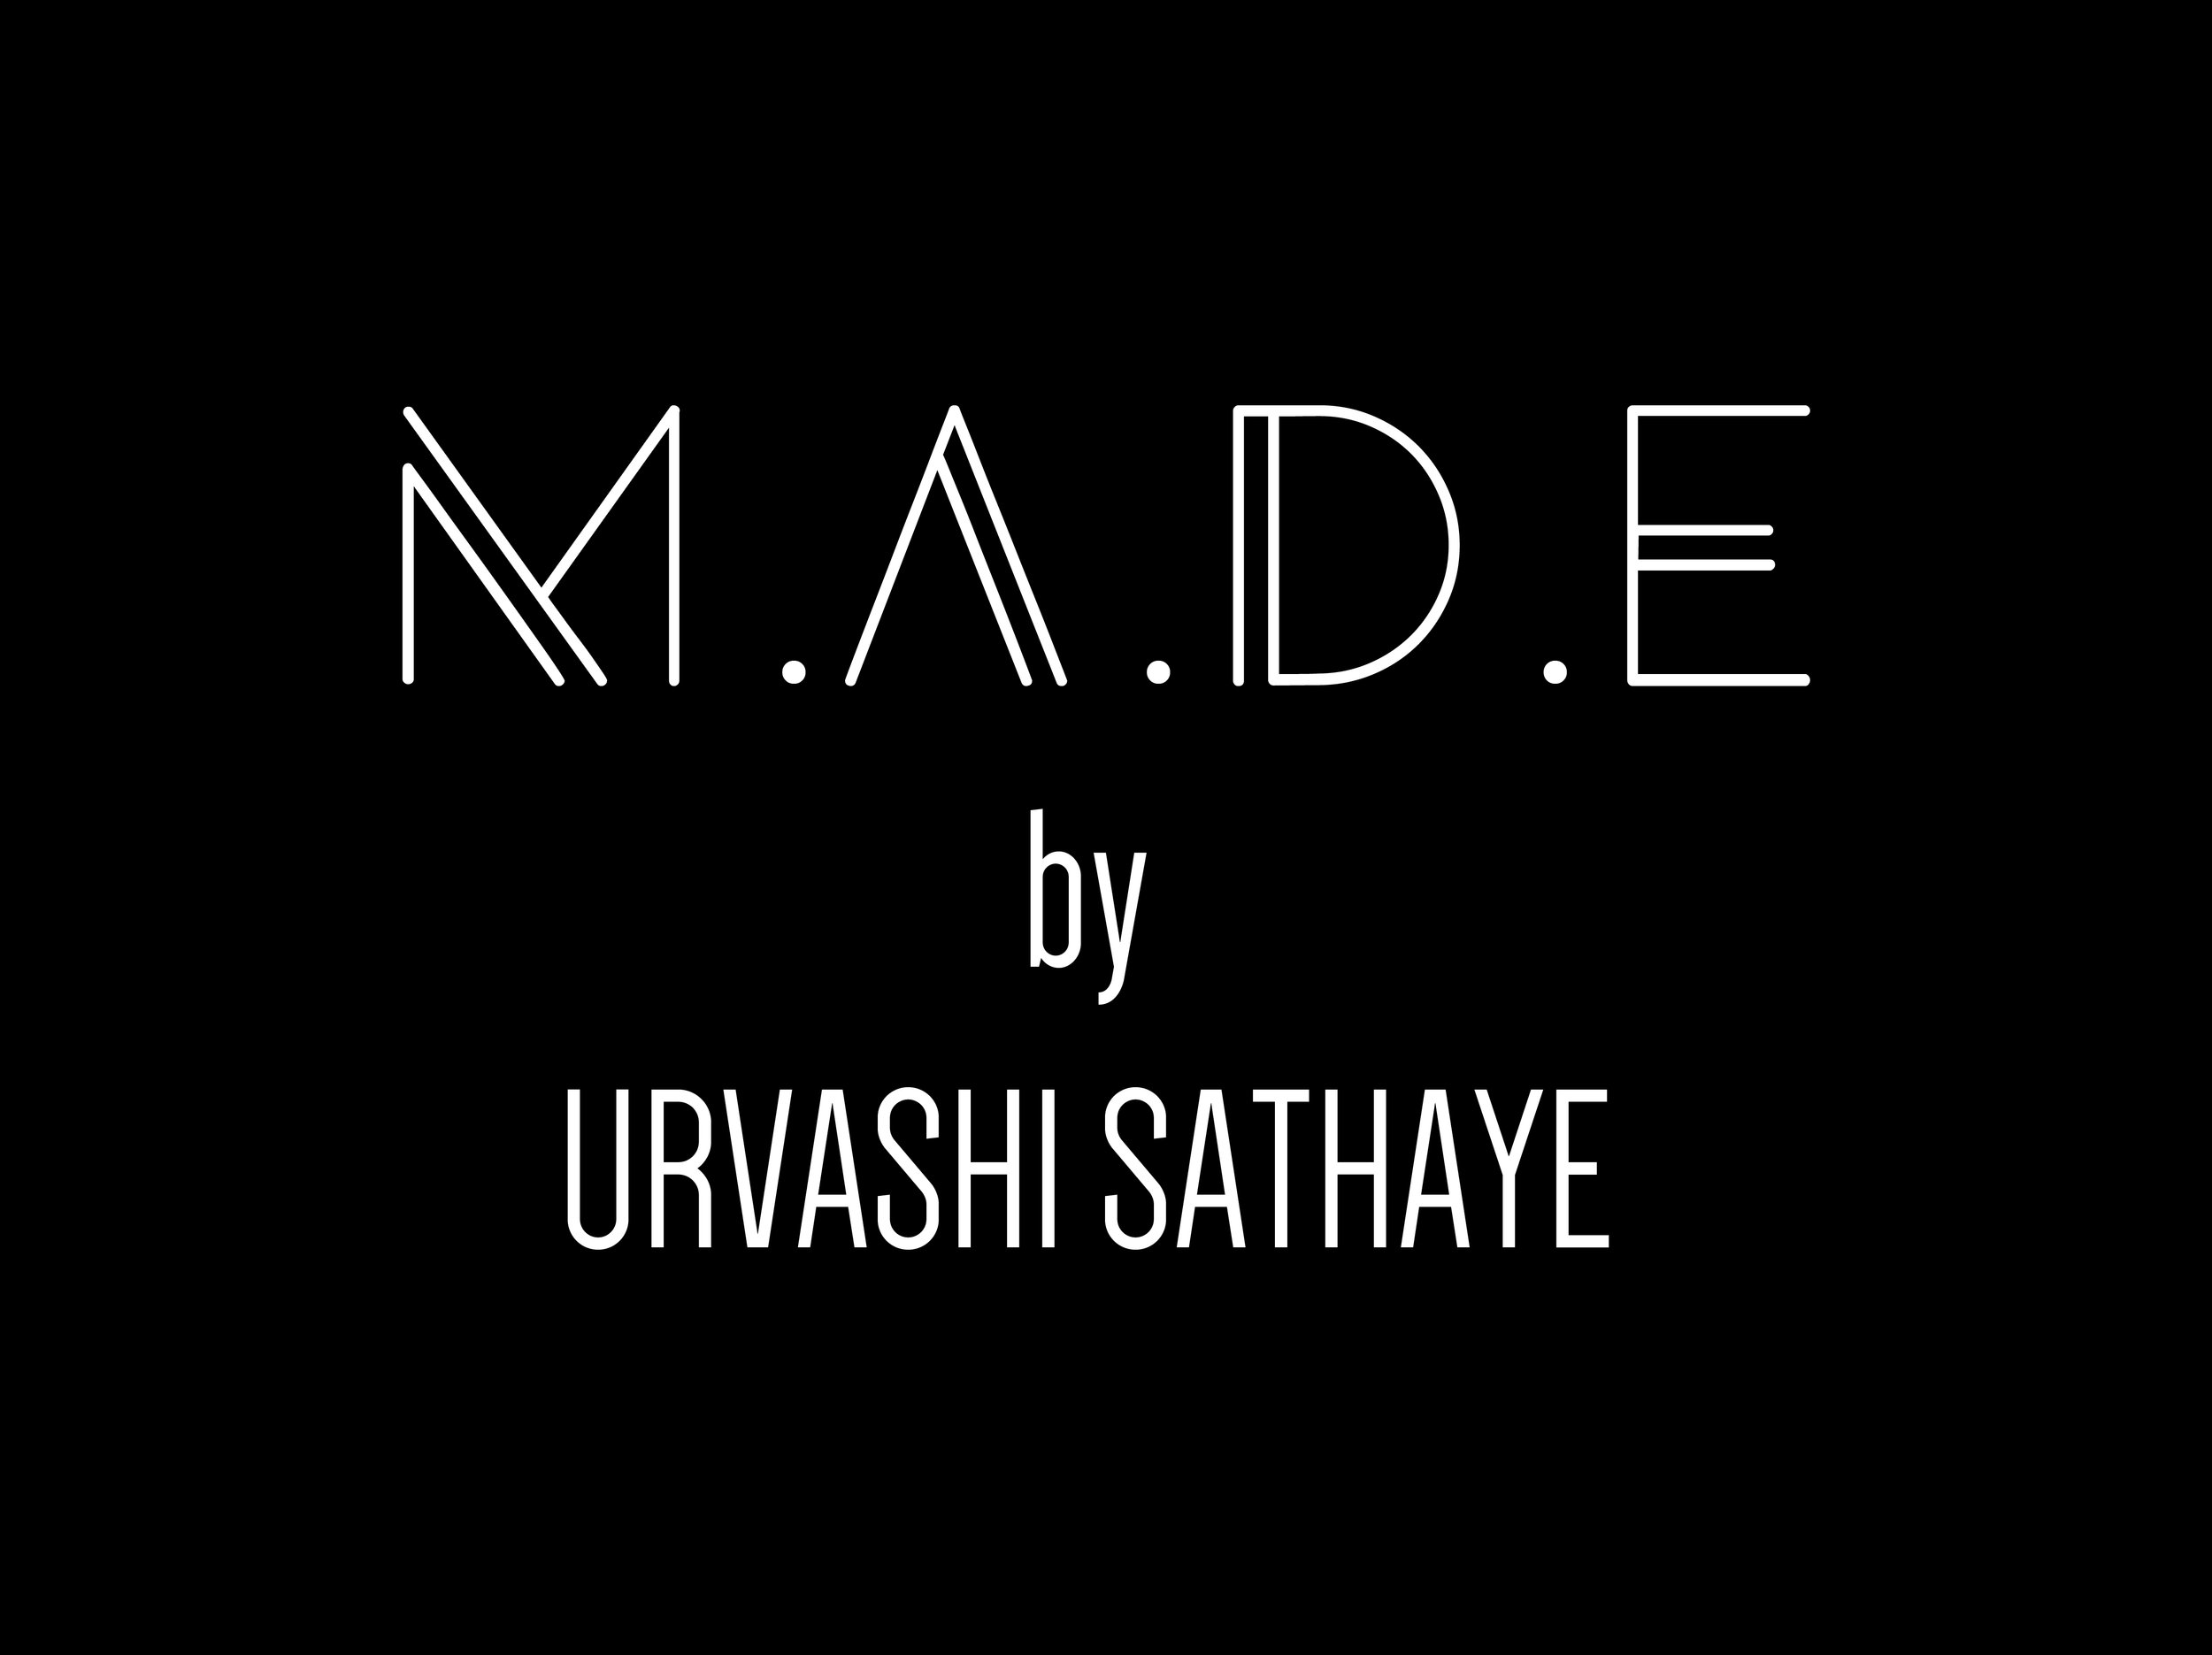 M.A.D.E by Urvashi Sathaye